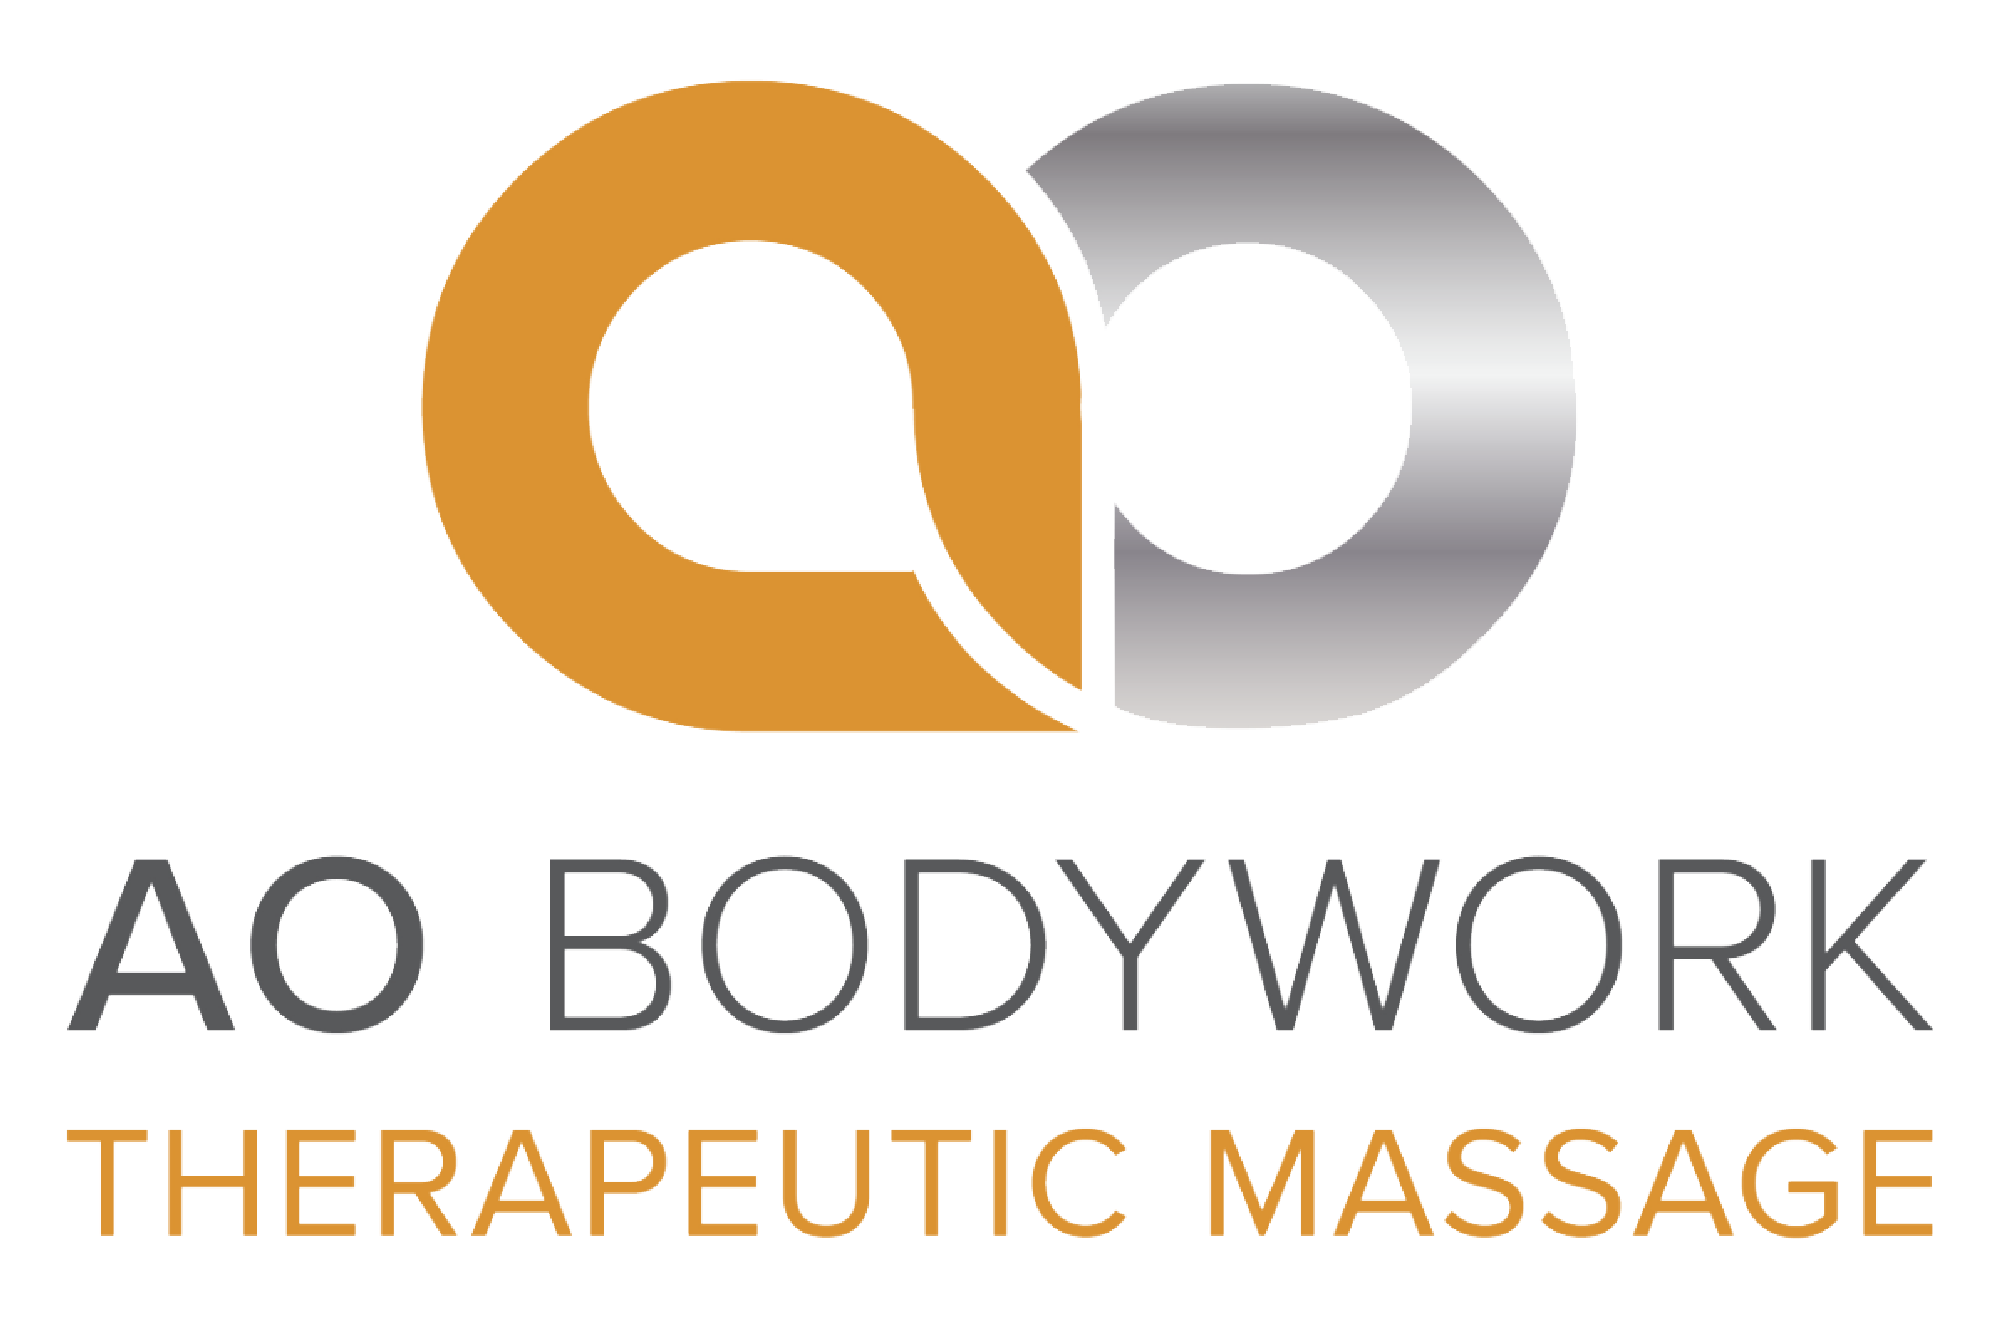 AO Bodywork Therapeutic Massage